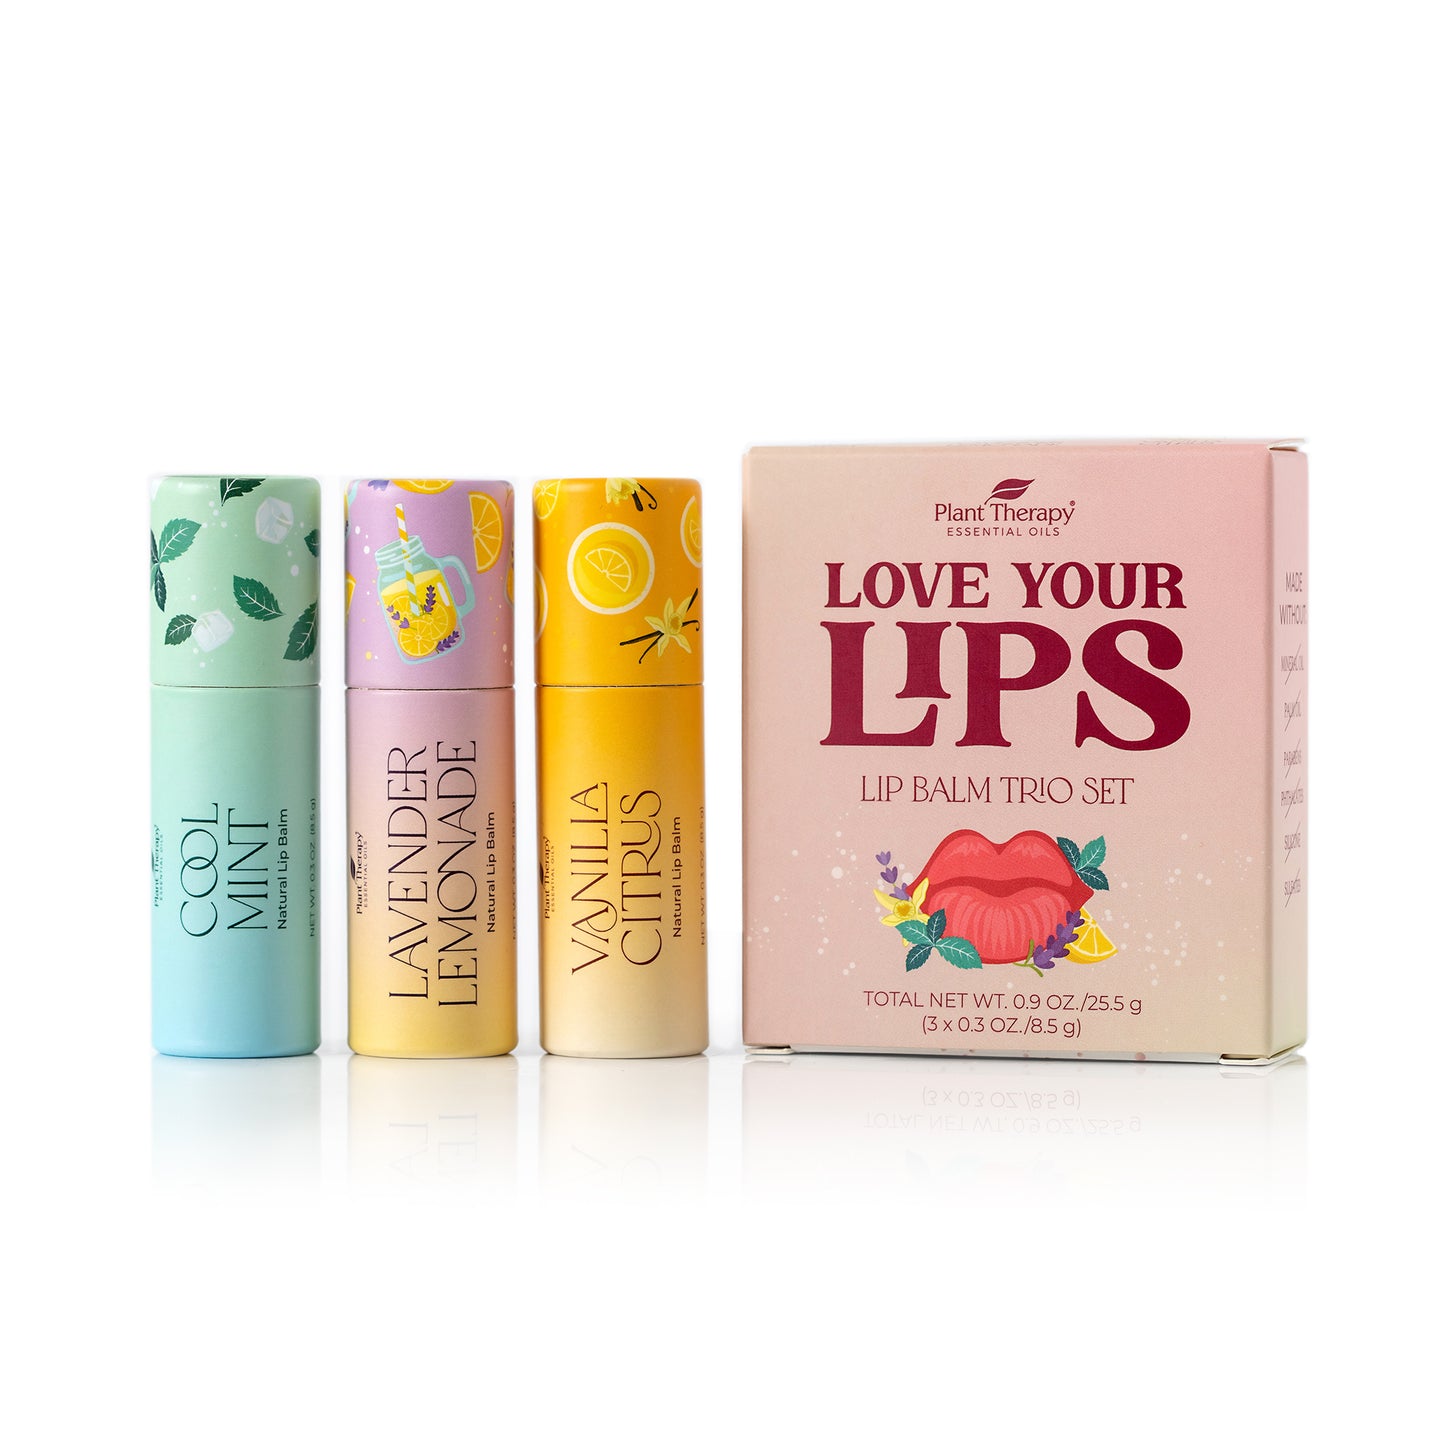 Love Your Lips Lip Balm Trio Set